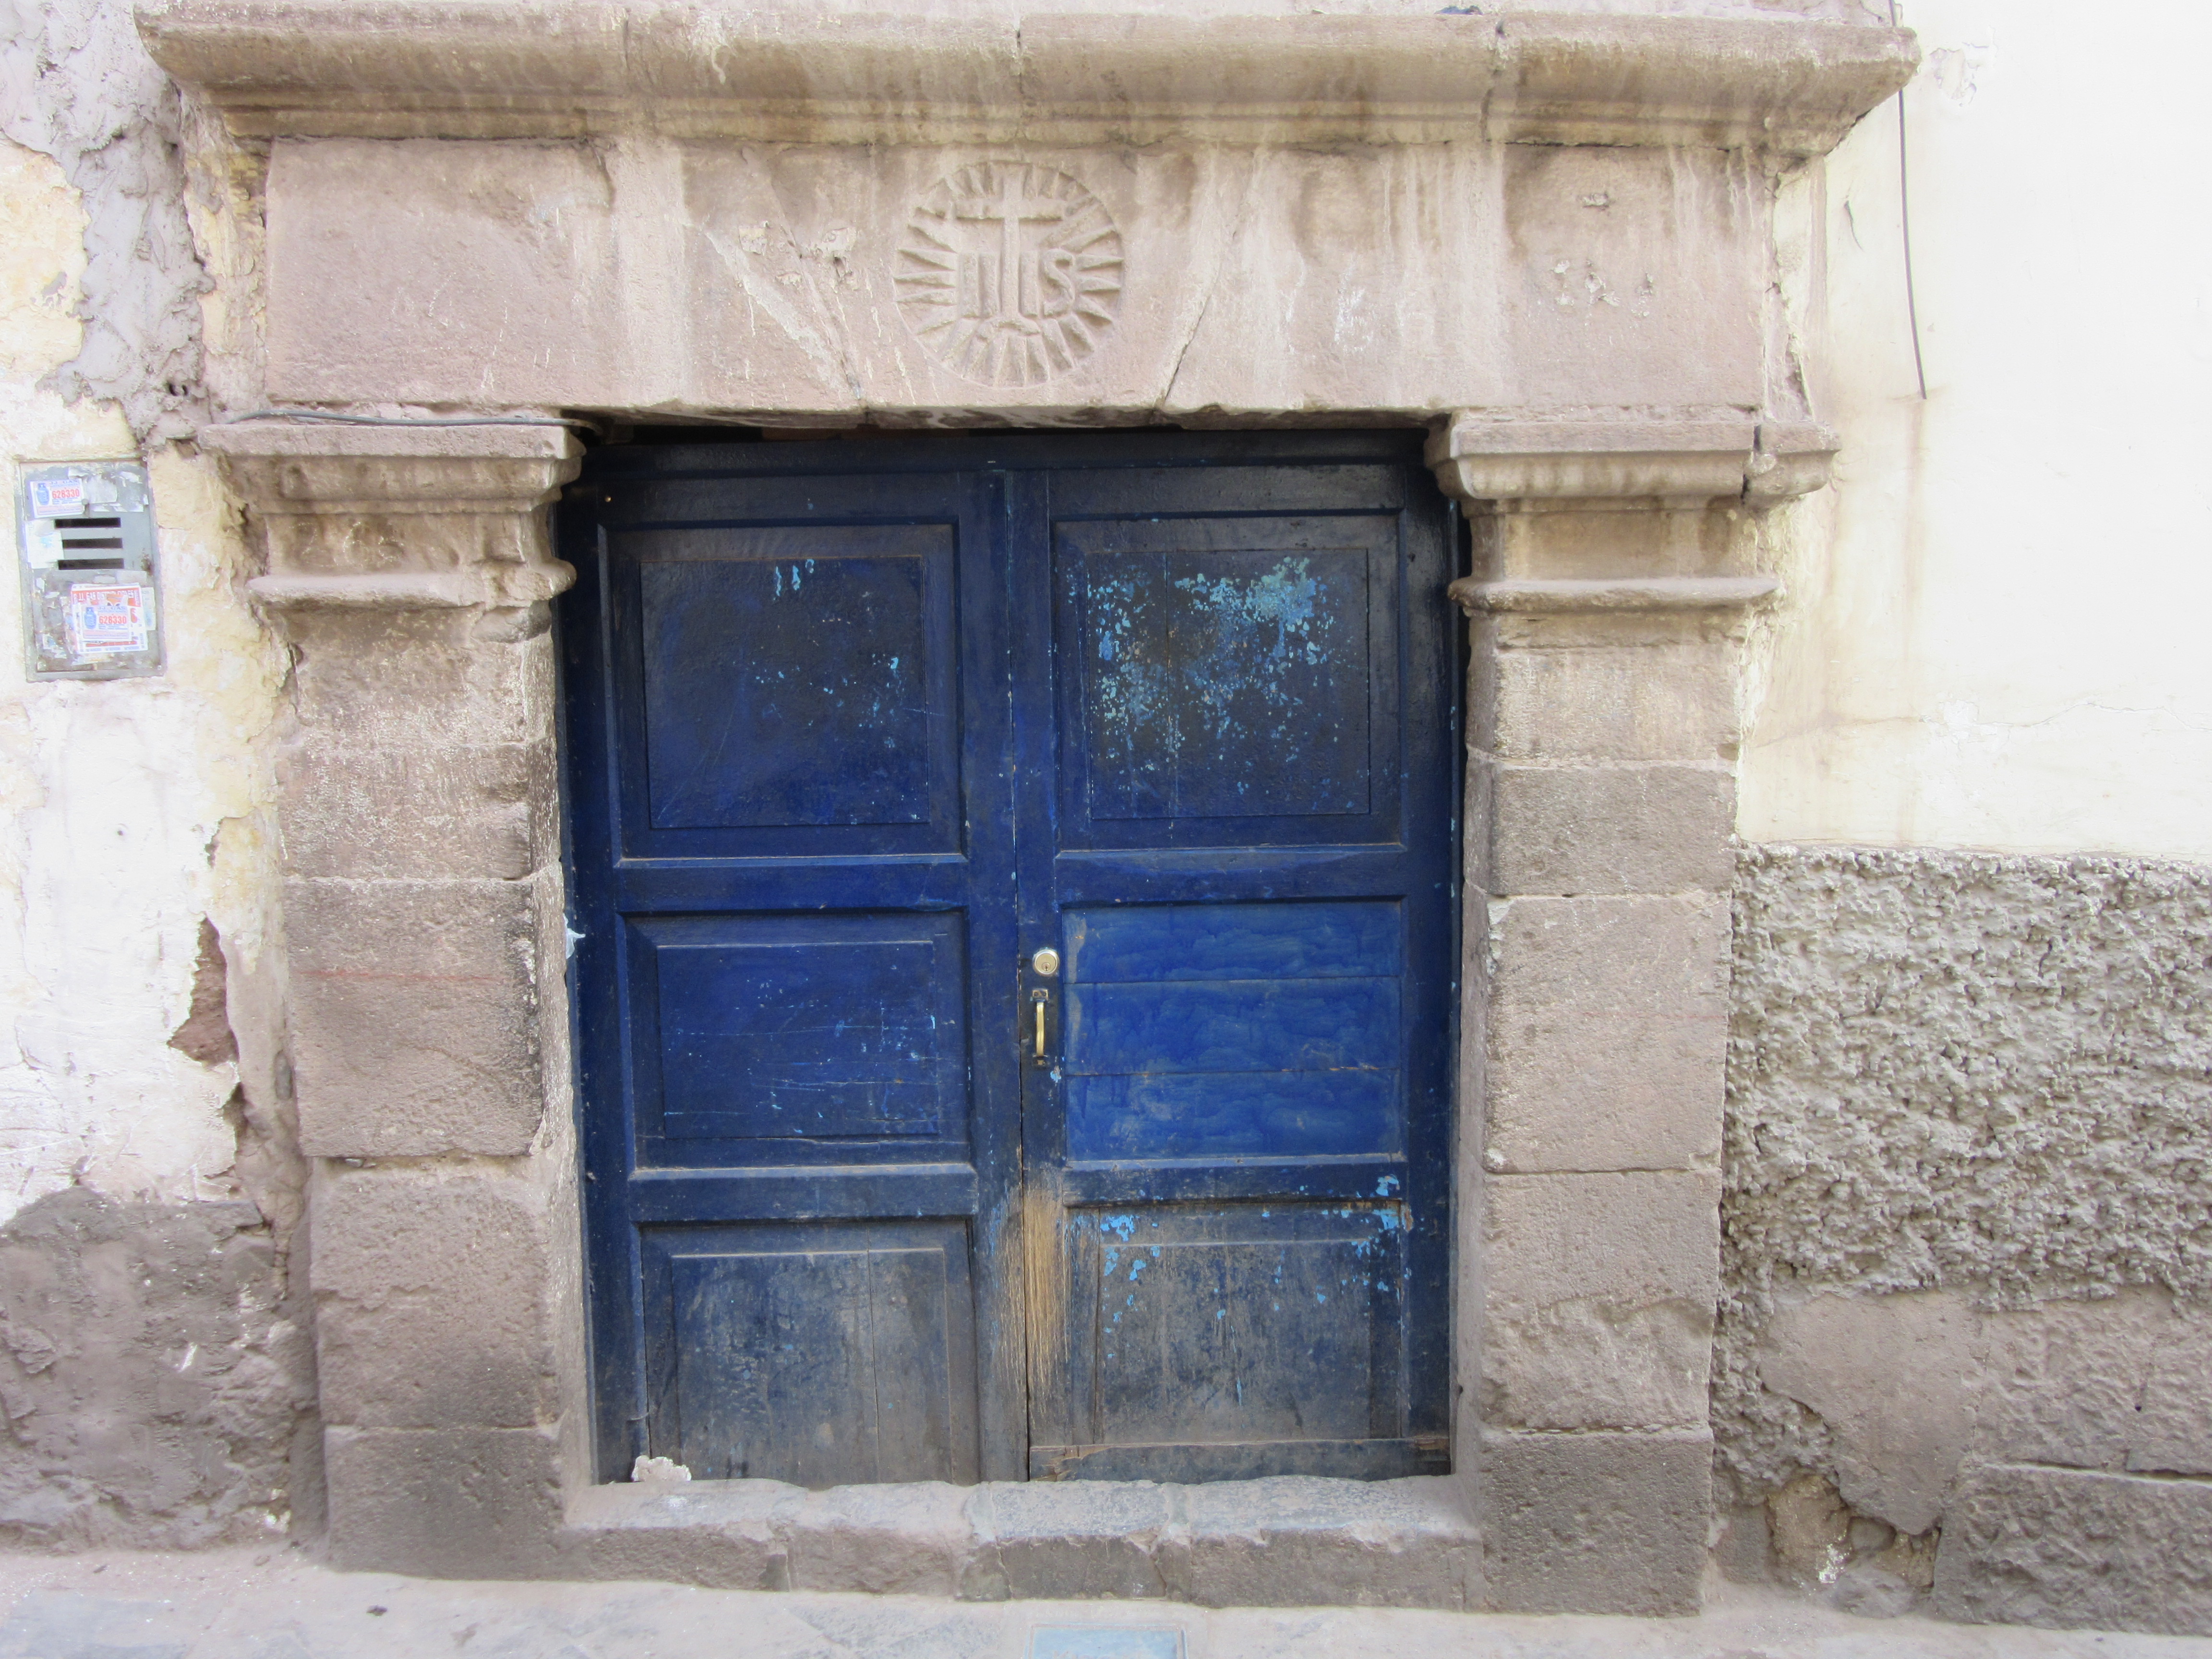 the blue door